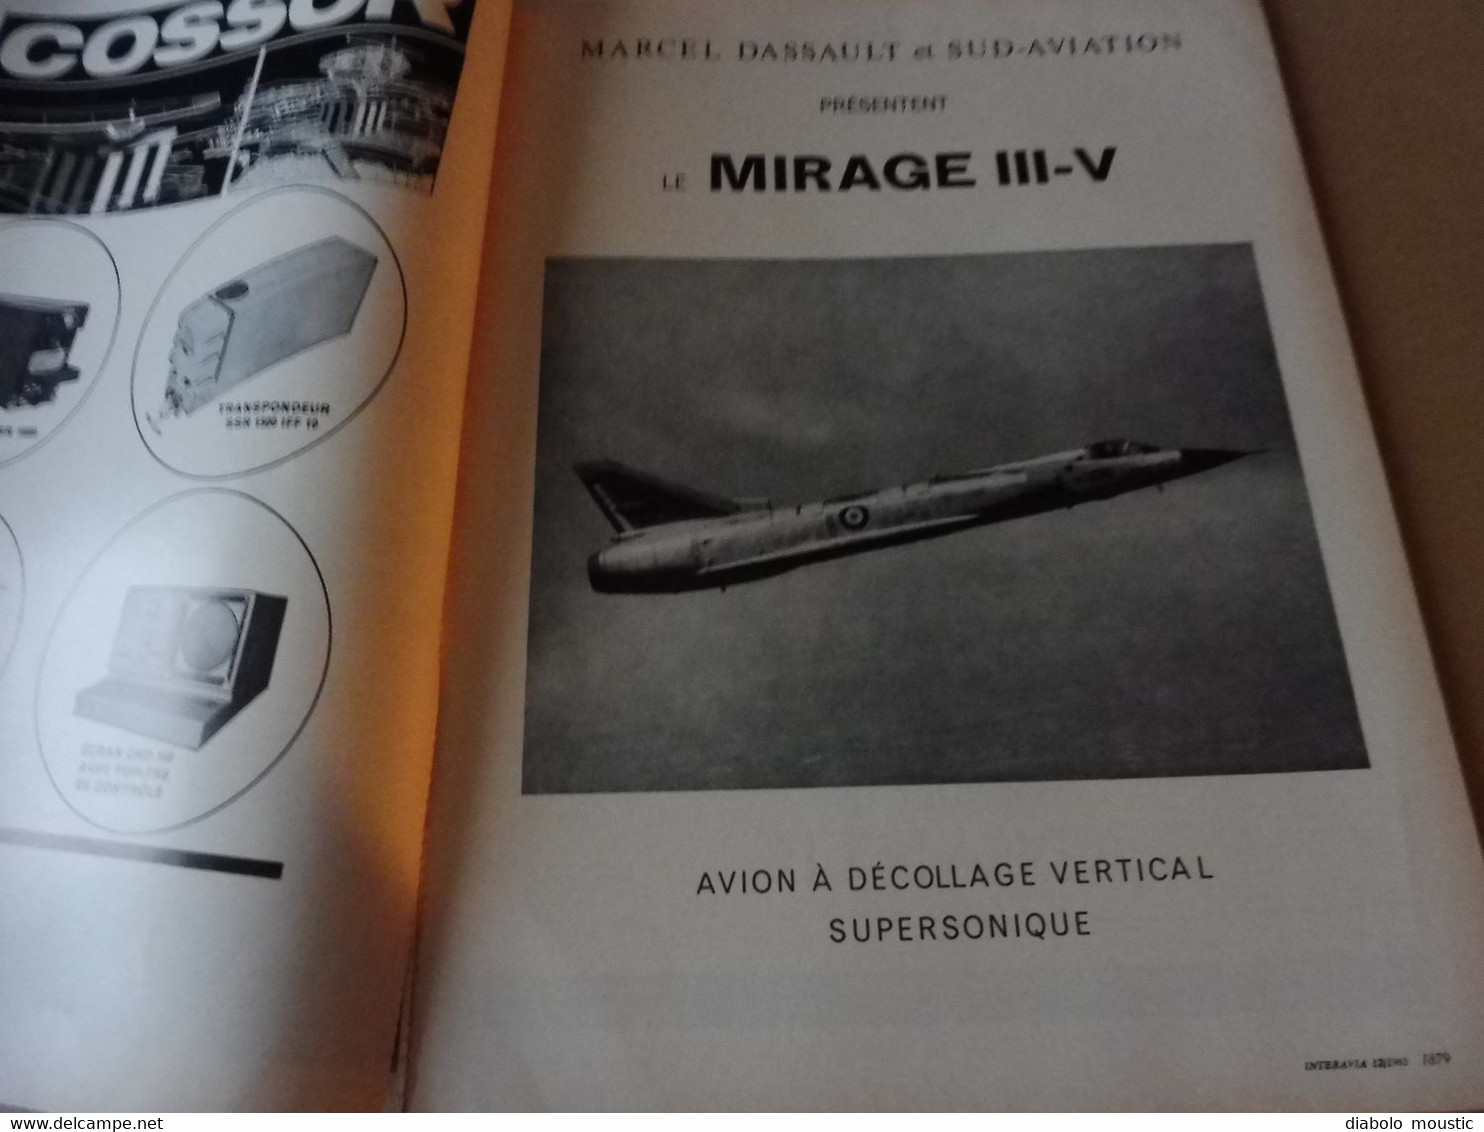 1965 INTERAVIA   - Navigation sur grande distance; Défense contre les blindés; Mirage IIIS des suisses; Etc